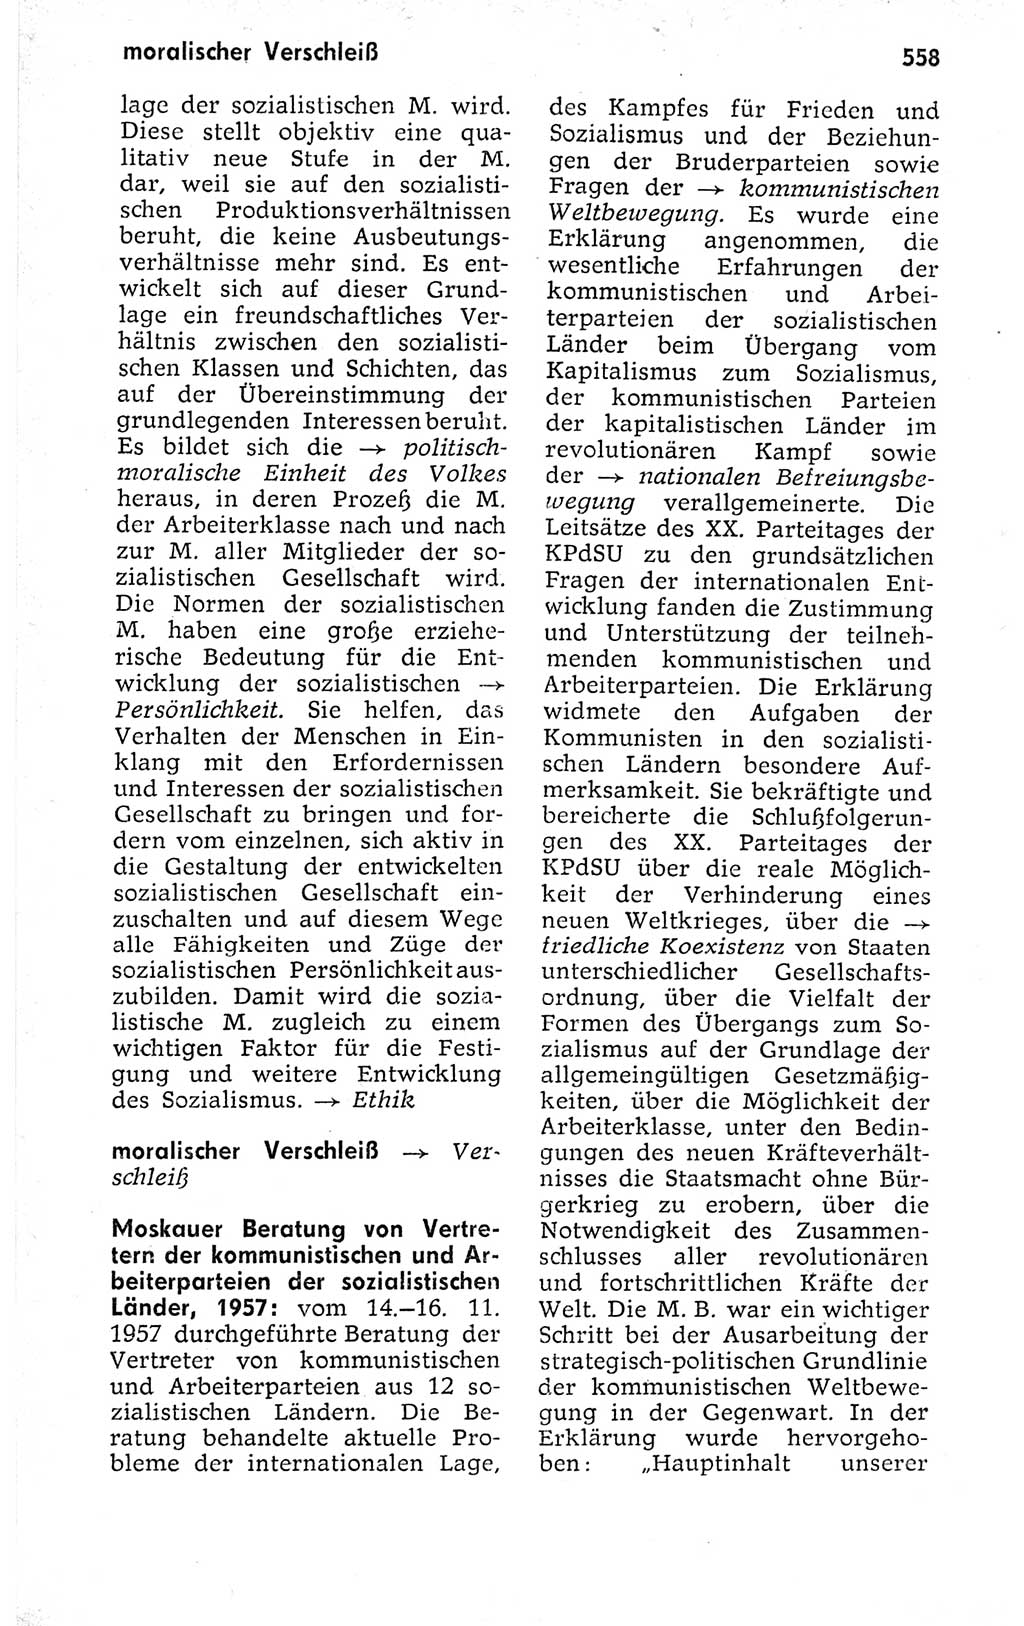 Kleines politisches Wörterbuch [Deutsche Demokratische Republik (DDR)] 1973, Seite 558 (Kl. pol. Wb. DDR 1973, S. 558)